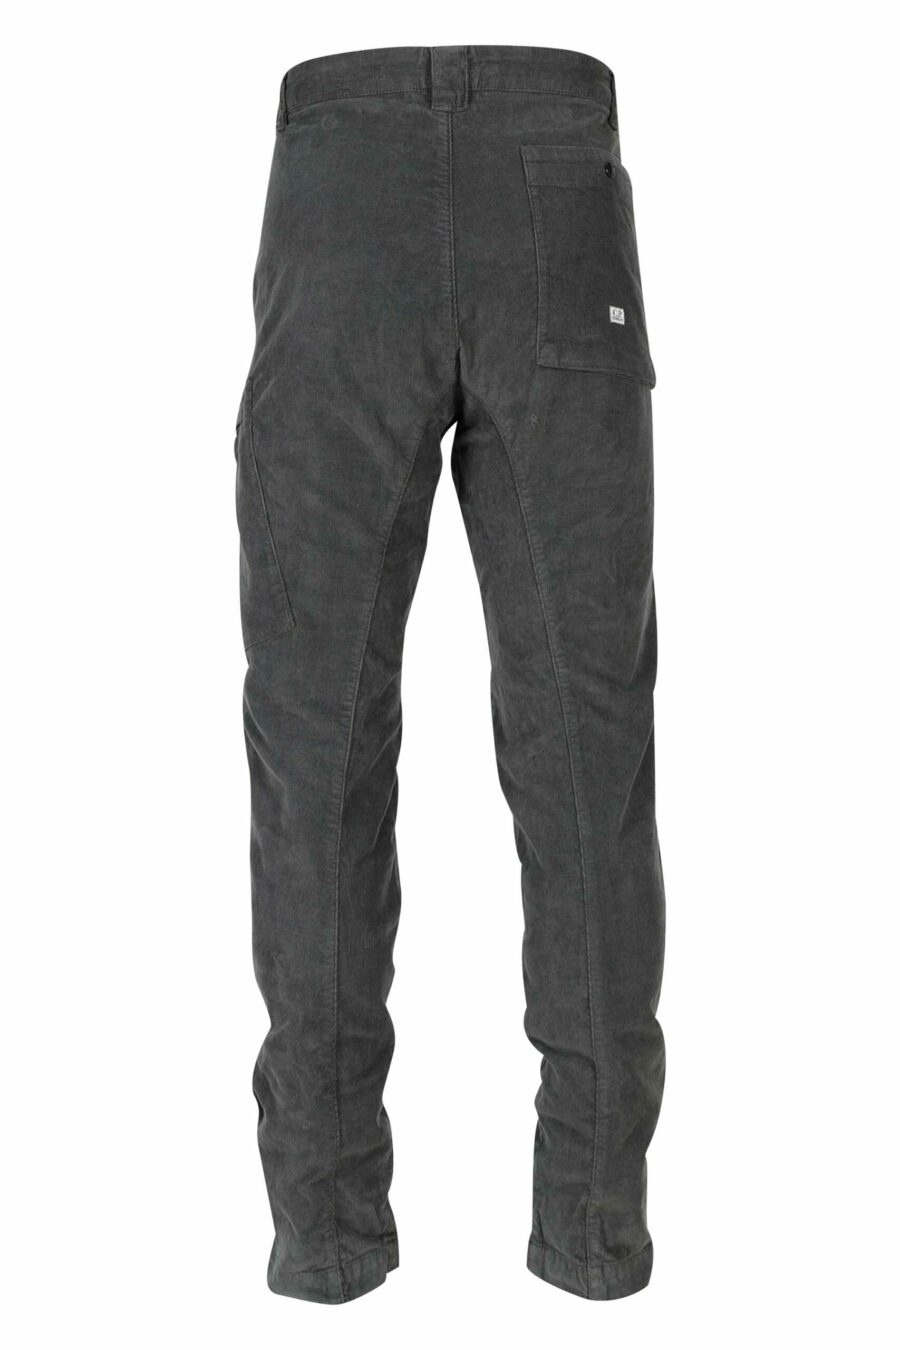 Pantalon gris en velours côtelé avec poche latérale et logo de l'objectif - 7620943650693 10 1 scaled